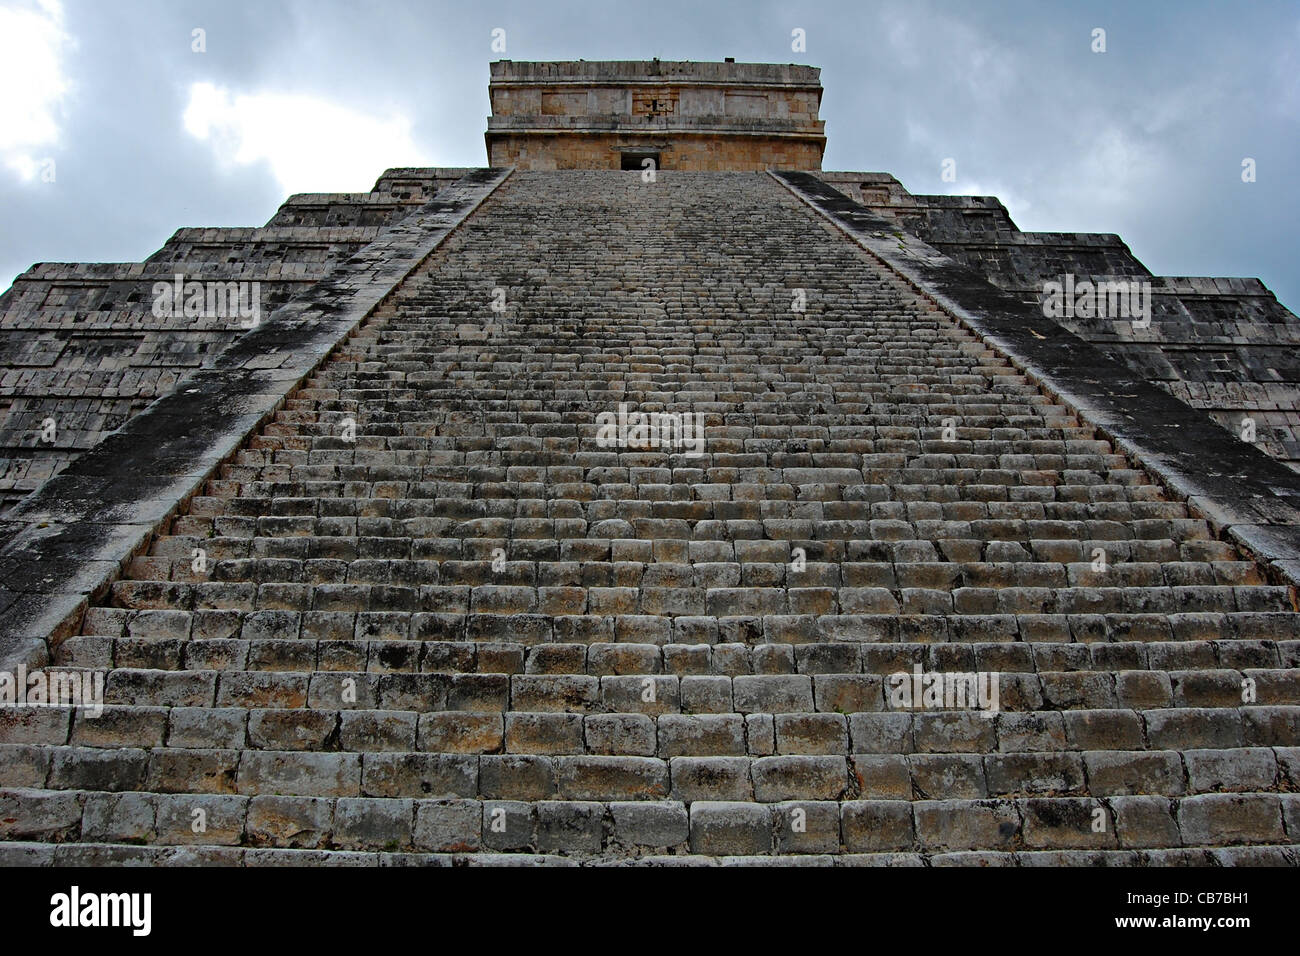 El Castillo, Chichen Itza, Mexico Stock Photo